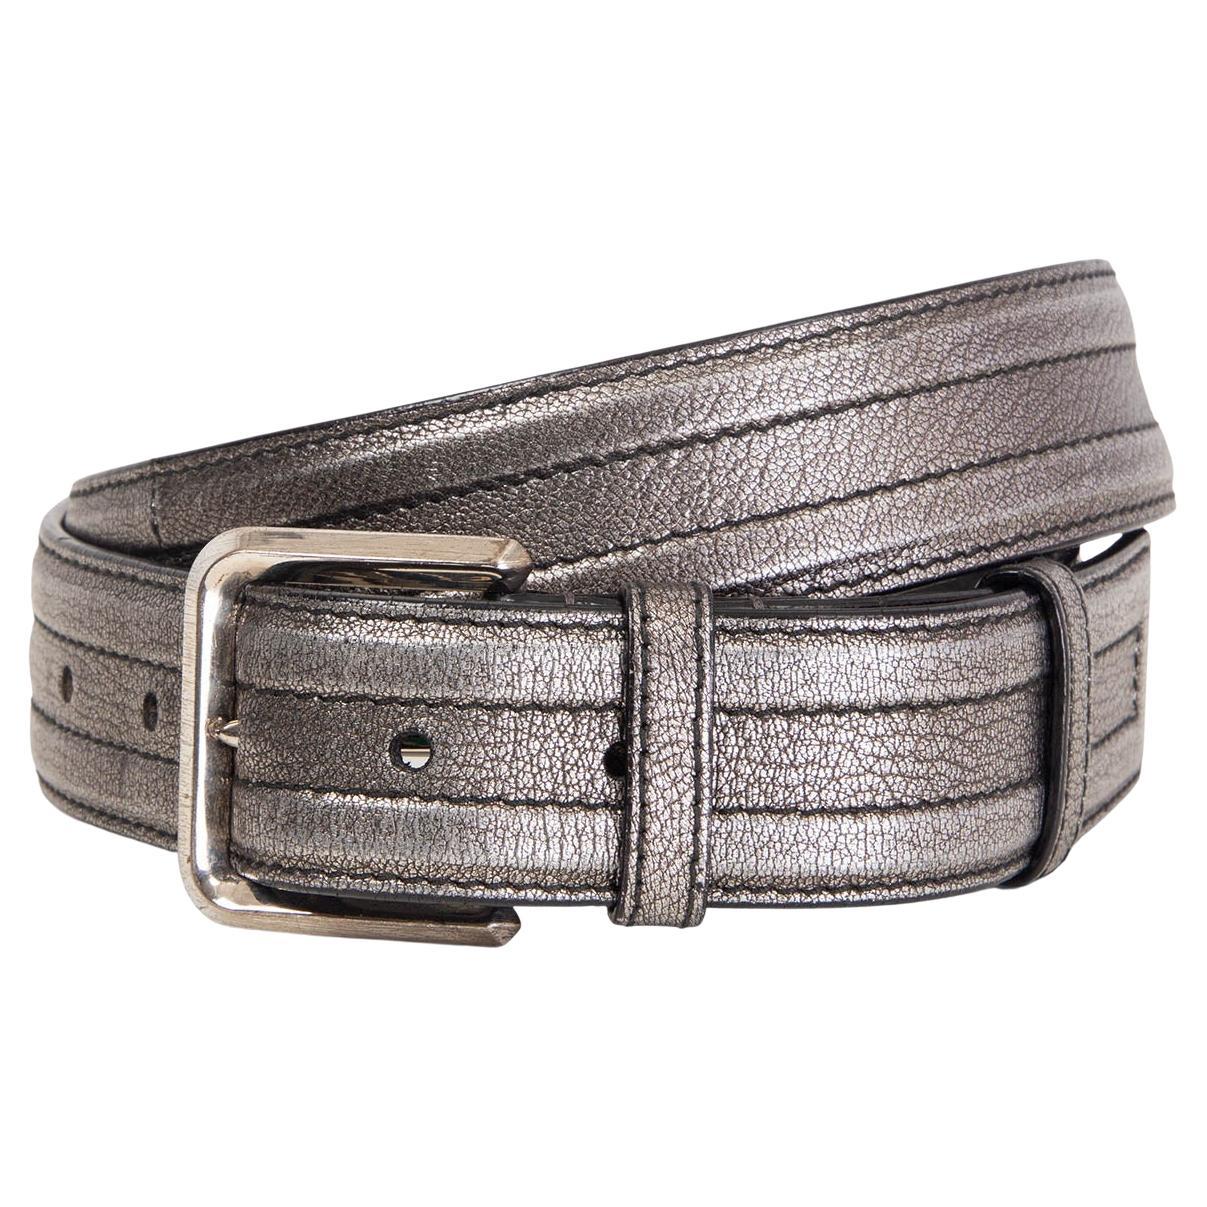 JIL SANDER metallic silver leather Belt 95